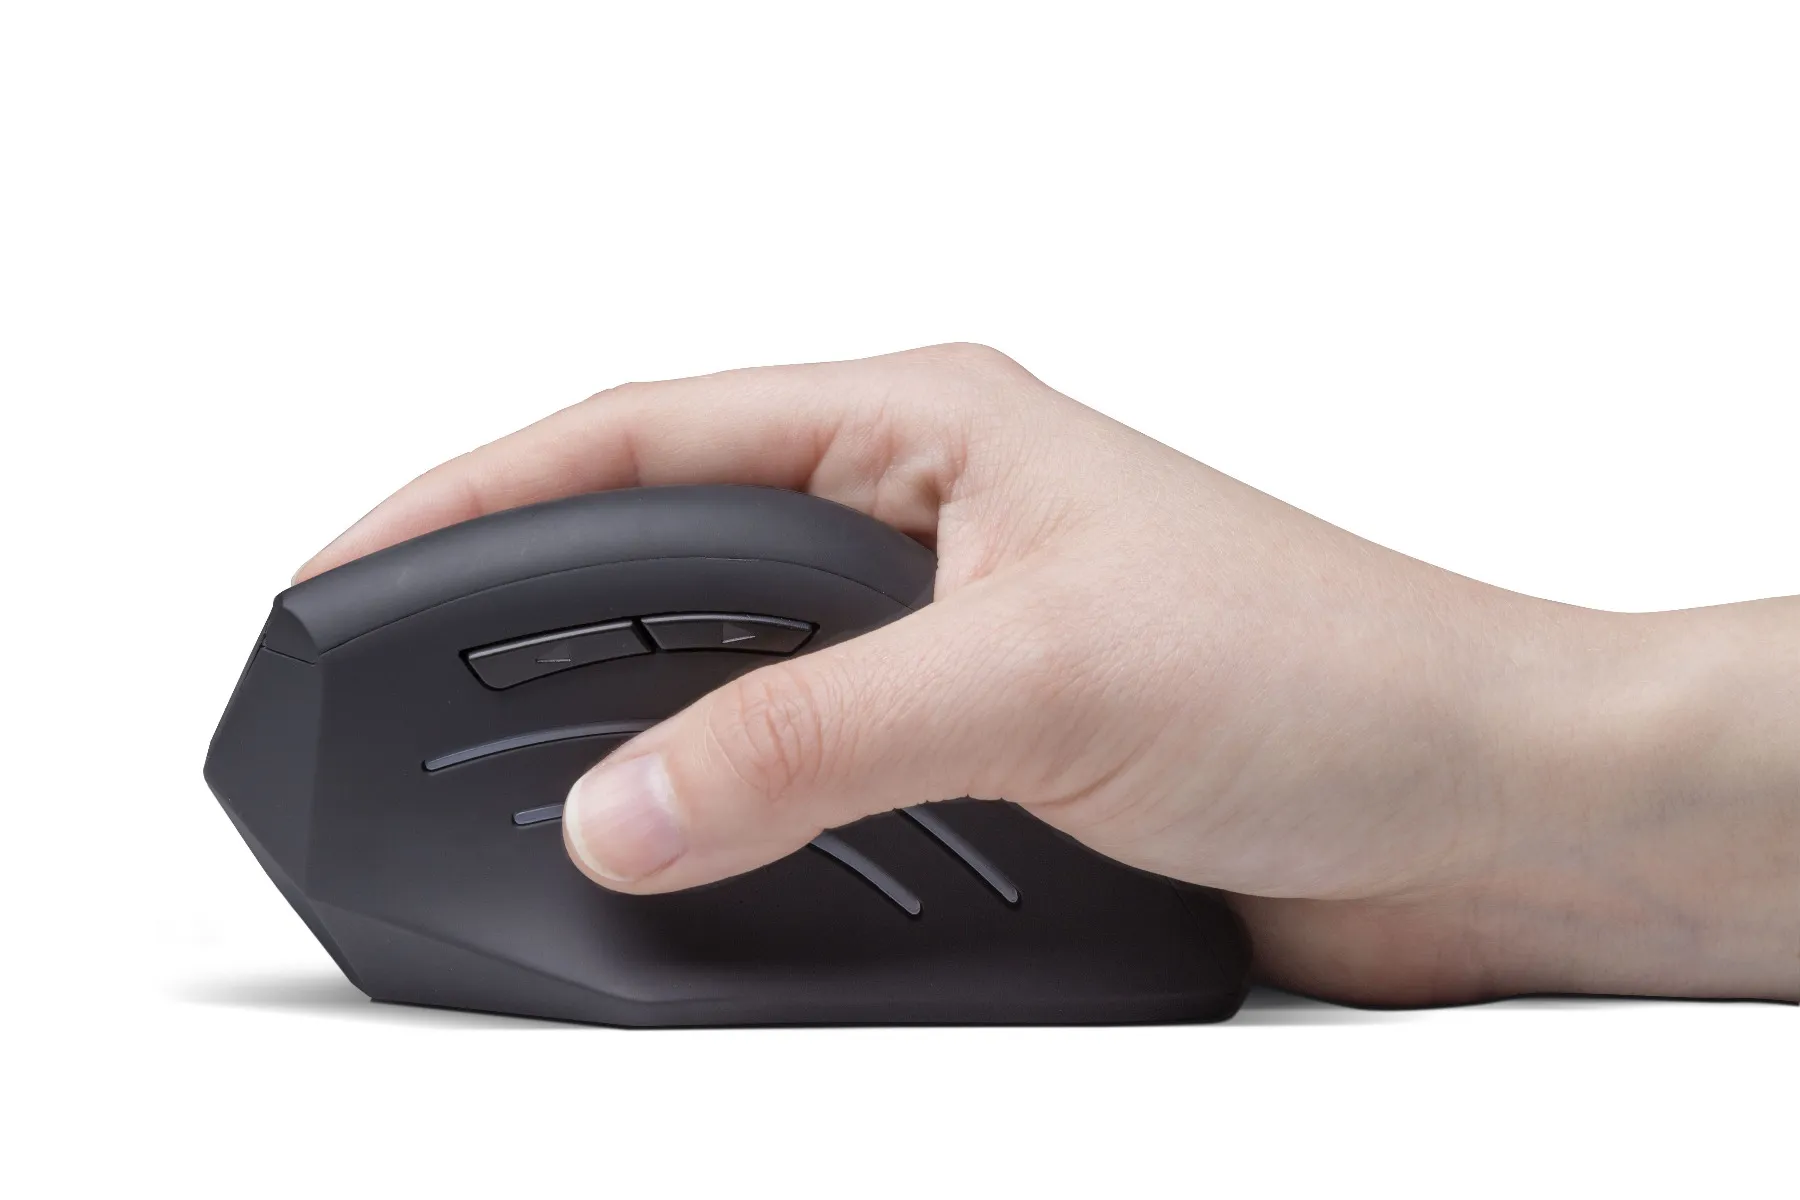 Connect IT For Health CMO-2510-BK ergonomická myš bezdrátová